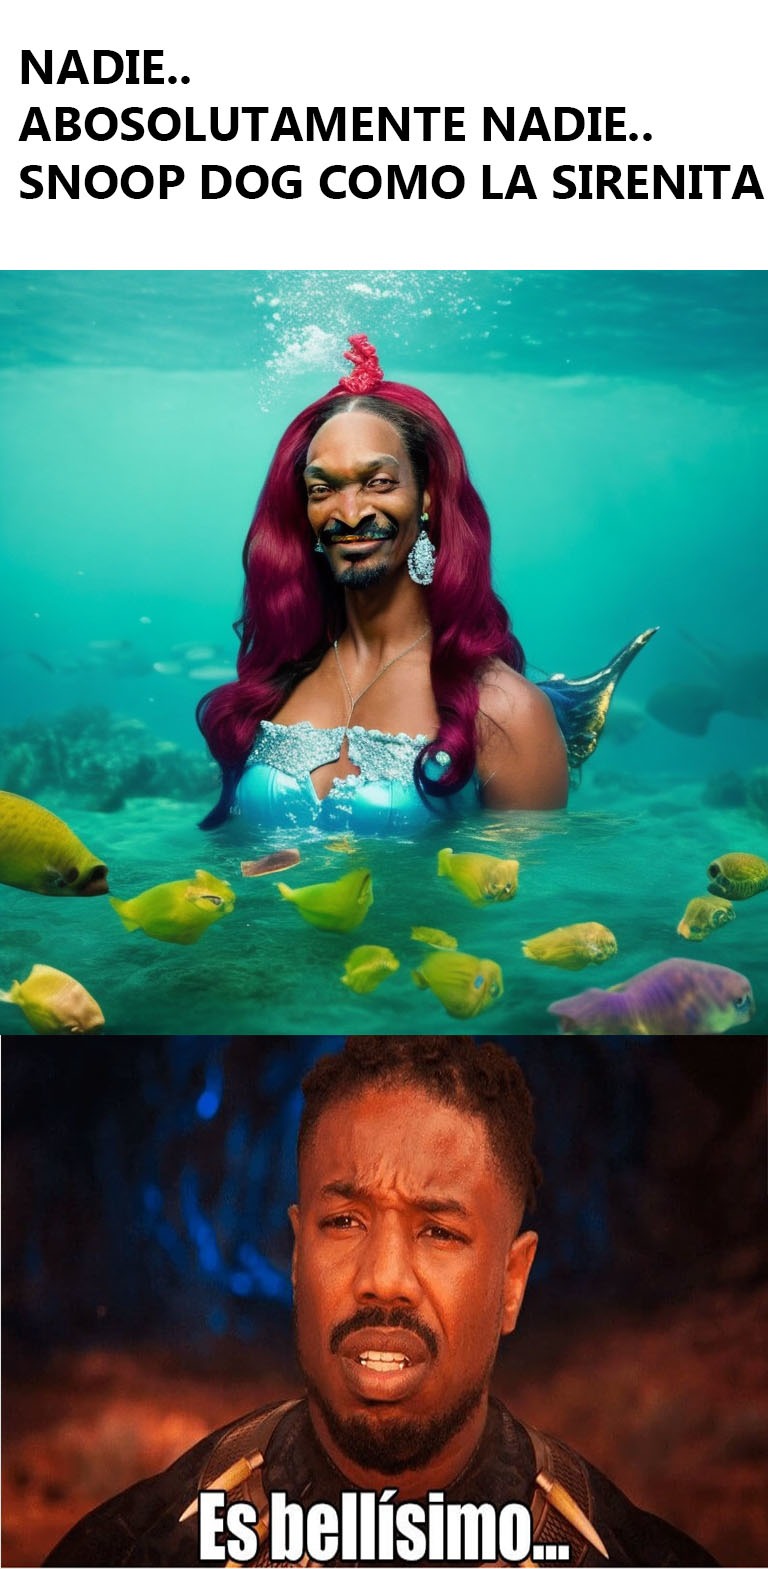 Sirenita Snoop meme